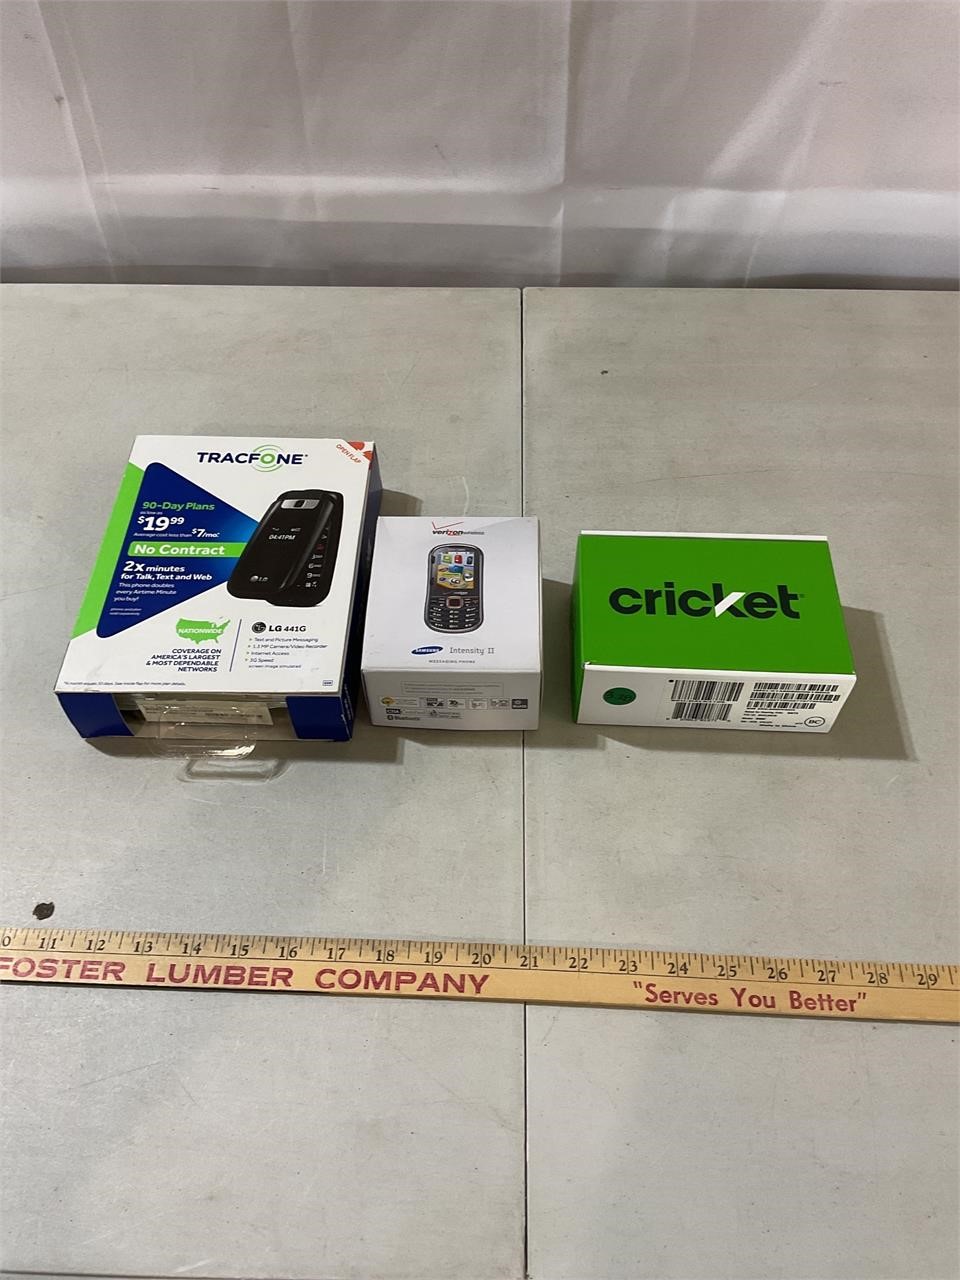 Trac, Samsung, Cricket phones